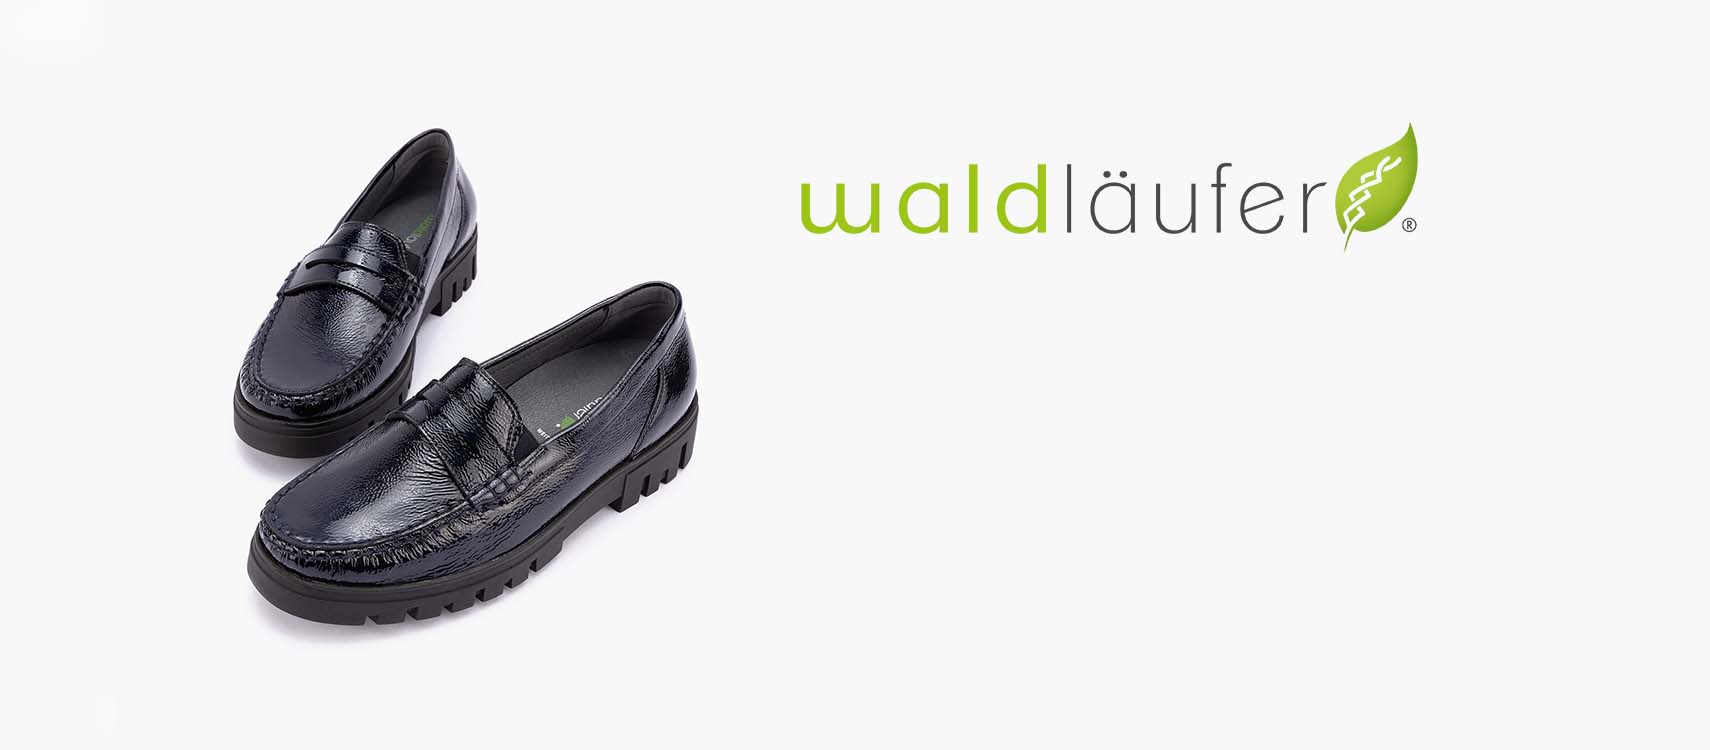 Waldlaufer Shoes